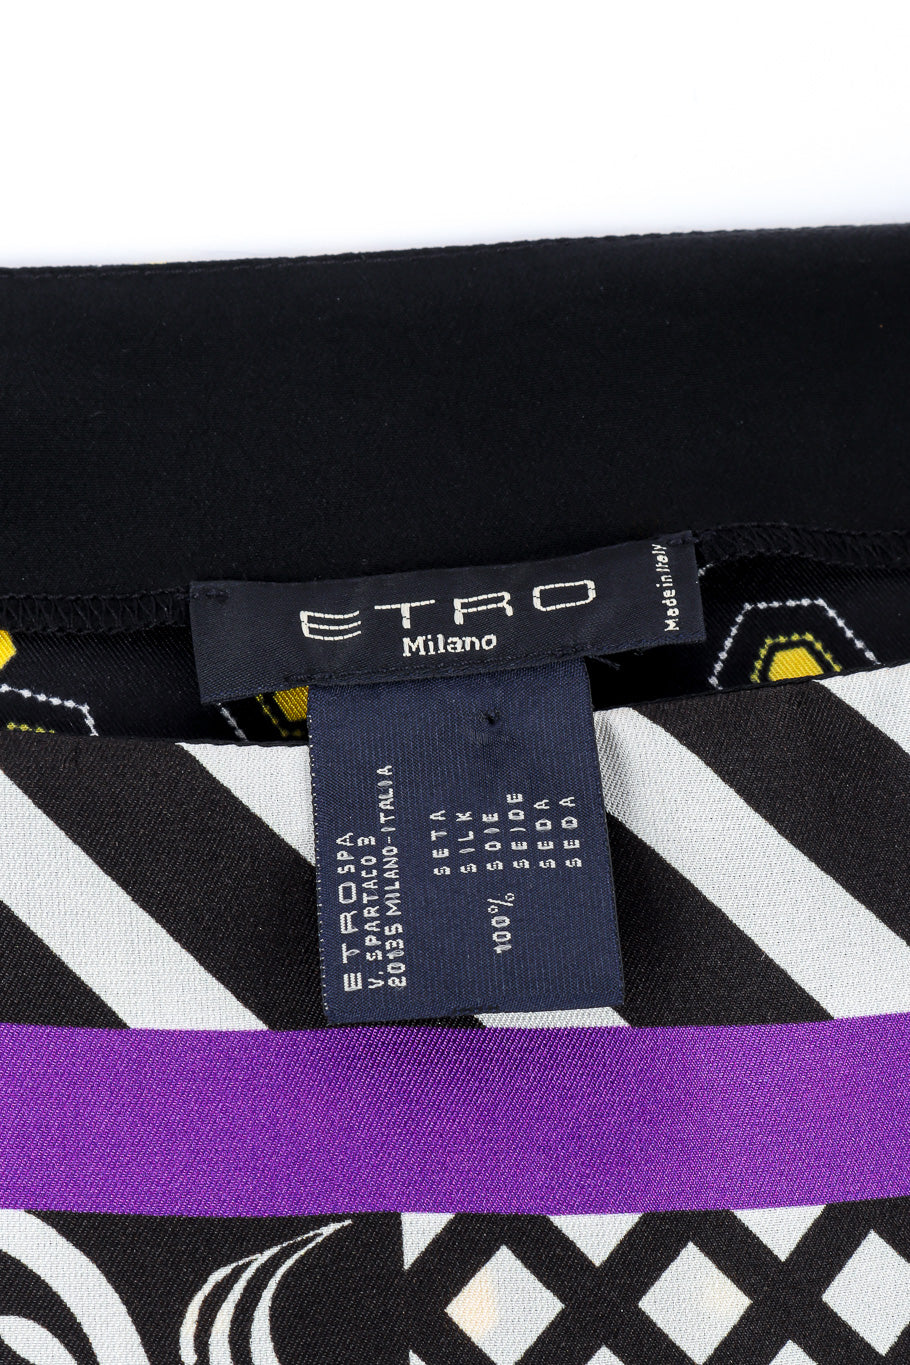 Poncho scarf top by Etro label @recessla